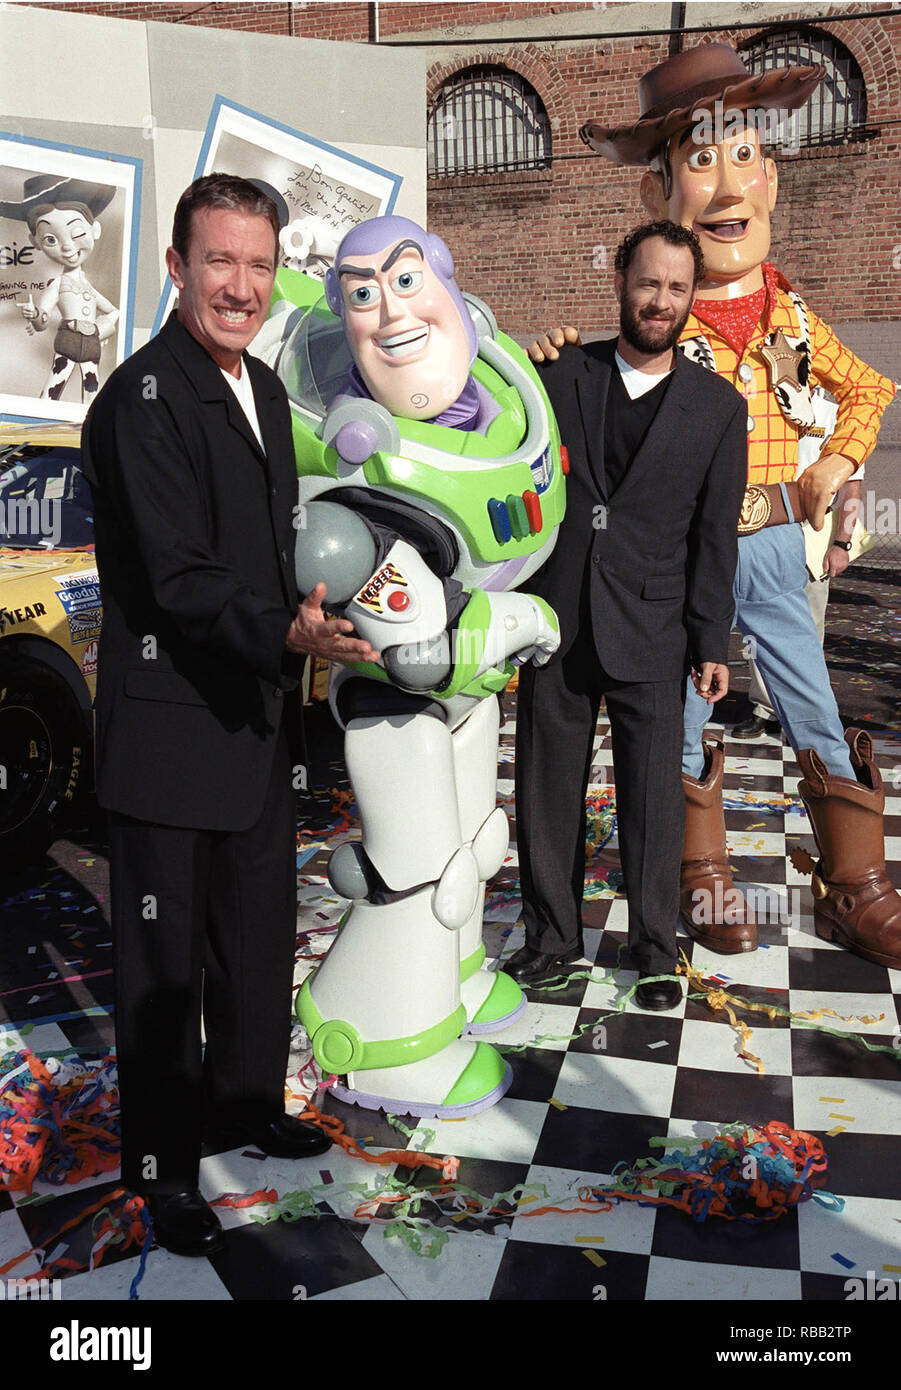 23OCT99 Acteurs : TIM ALLEN (à gauche) & Tom Hanks avec 'Toy Story' caractères 'Buzz Lightyear' & 'Woody' dont les voix qu'ils décrivent dans les films. Ils ont été à une promotion à Hollywood pour dévoiler trois voitures de course NASCAR à thème 'Toy Story 2' qui ouvre le mois prochain. © RTSmith MediaPunch / Banque D'Images